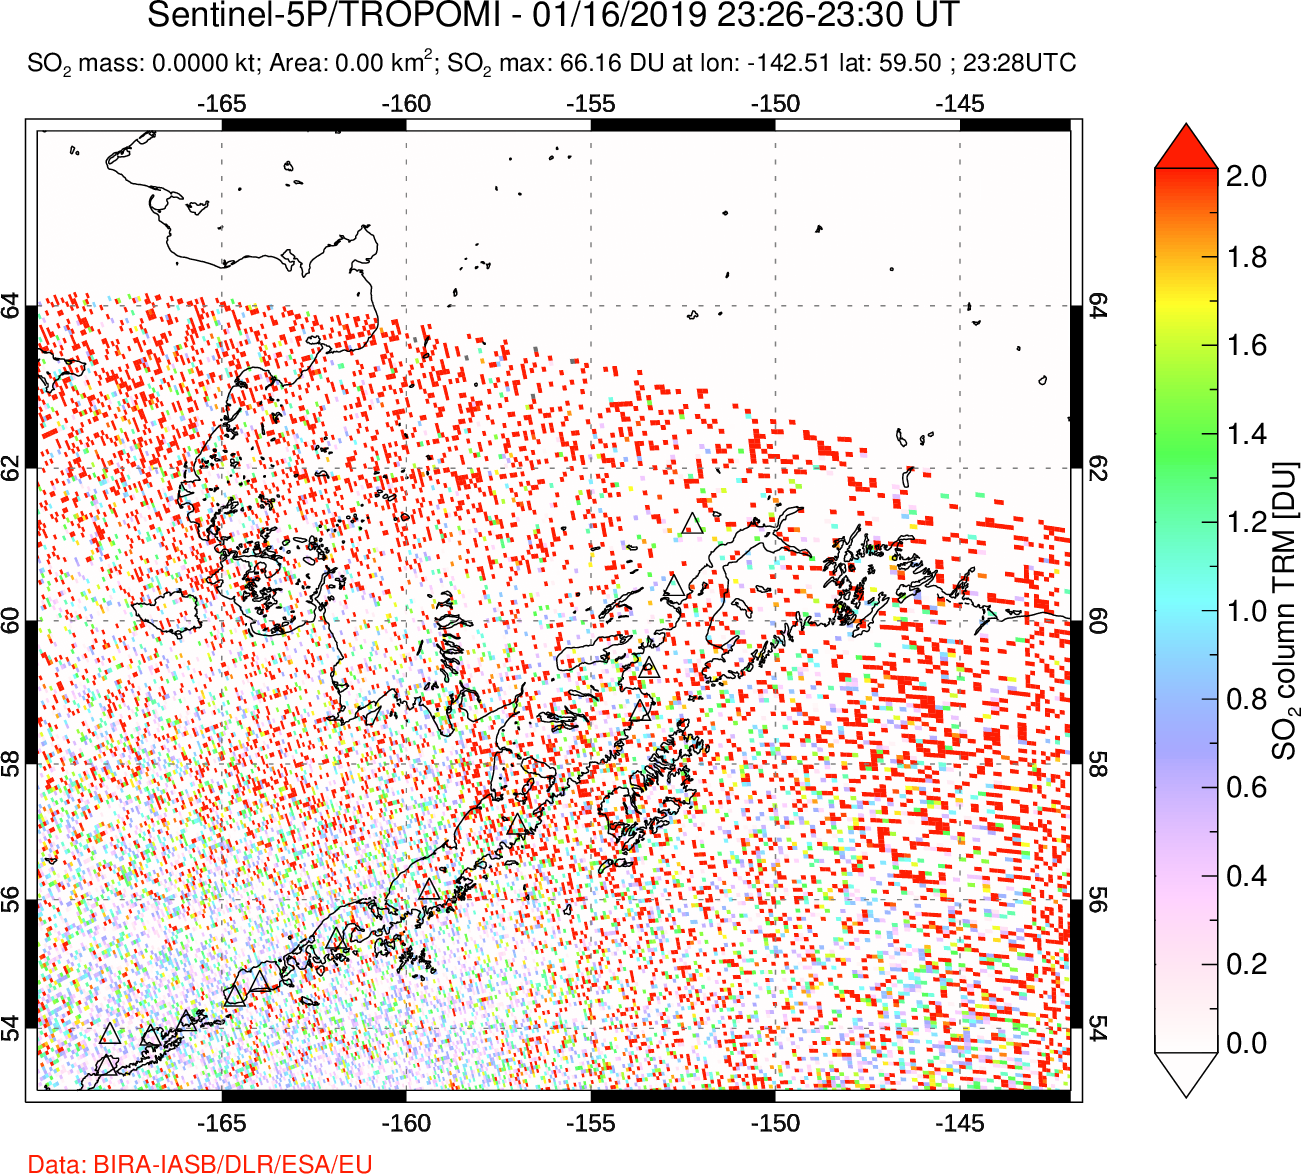 A sulfur dioxide image over Alaska, USA on Jan 16, 2019.